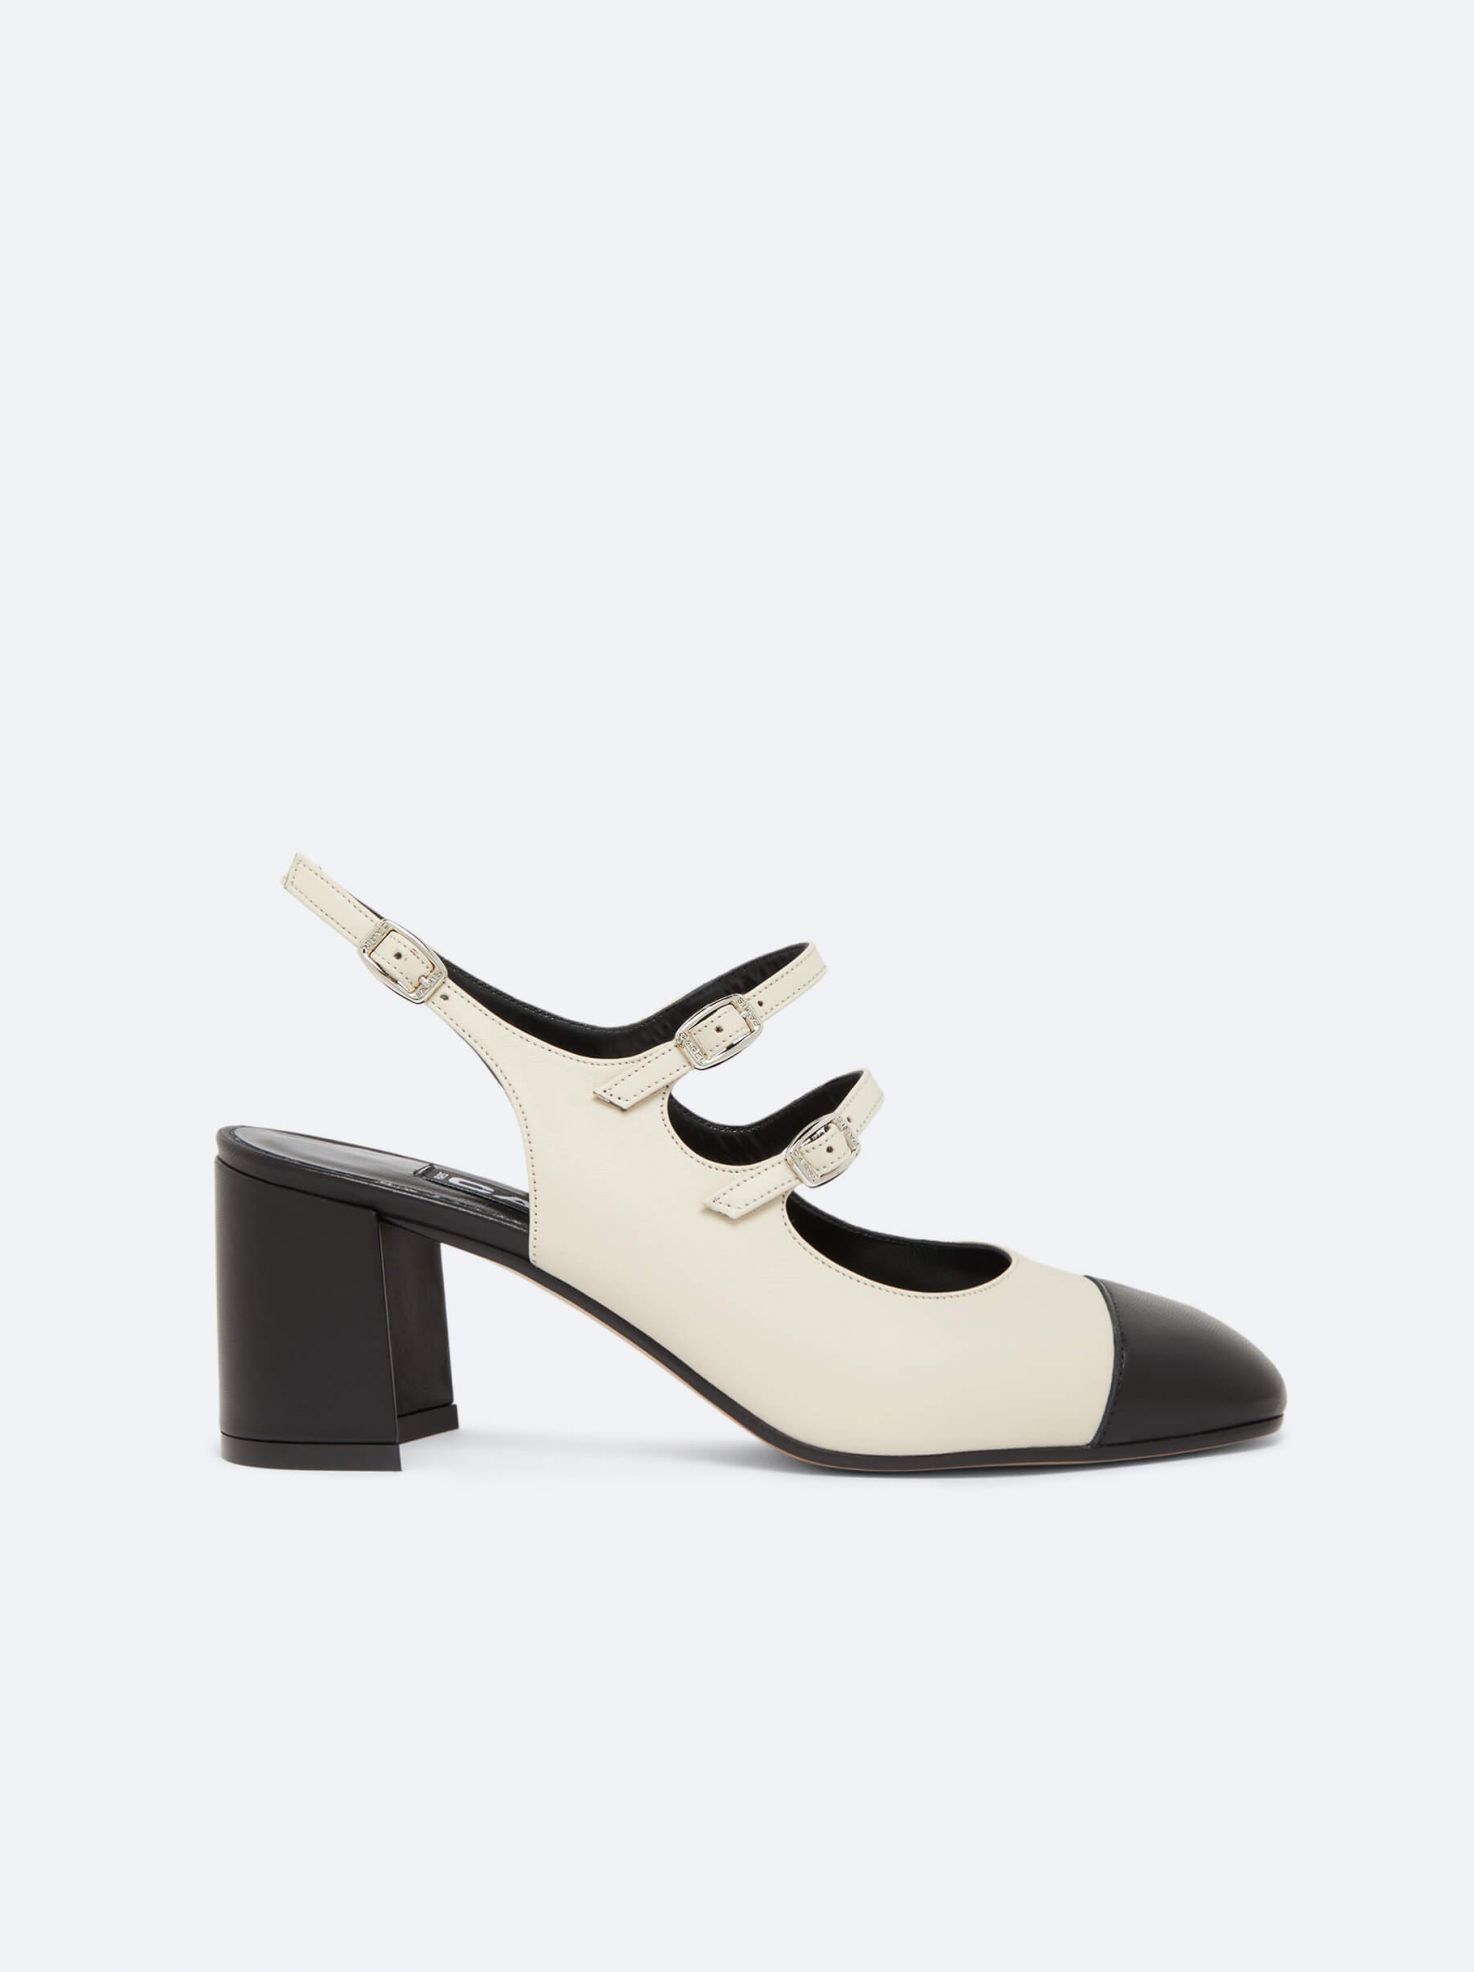 New collection - Shoes for Women | Carel Paris